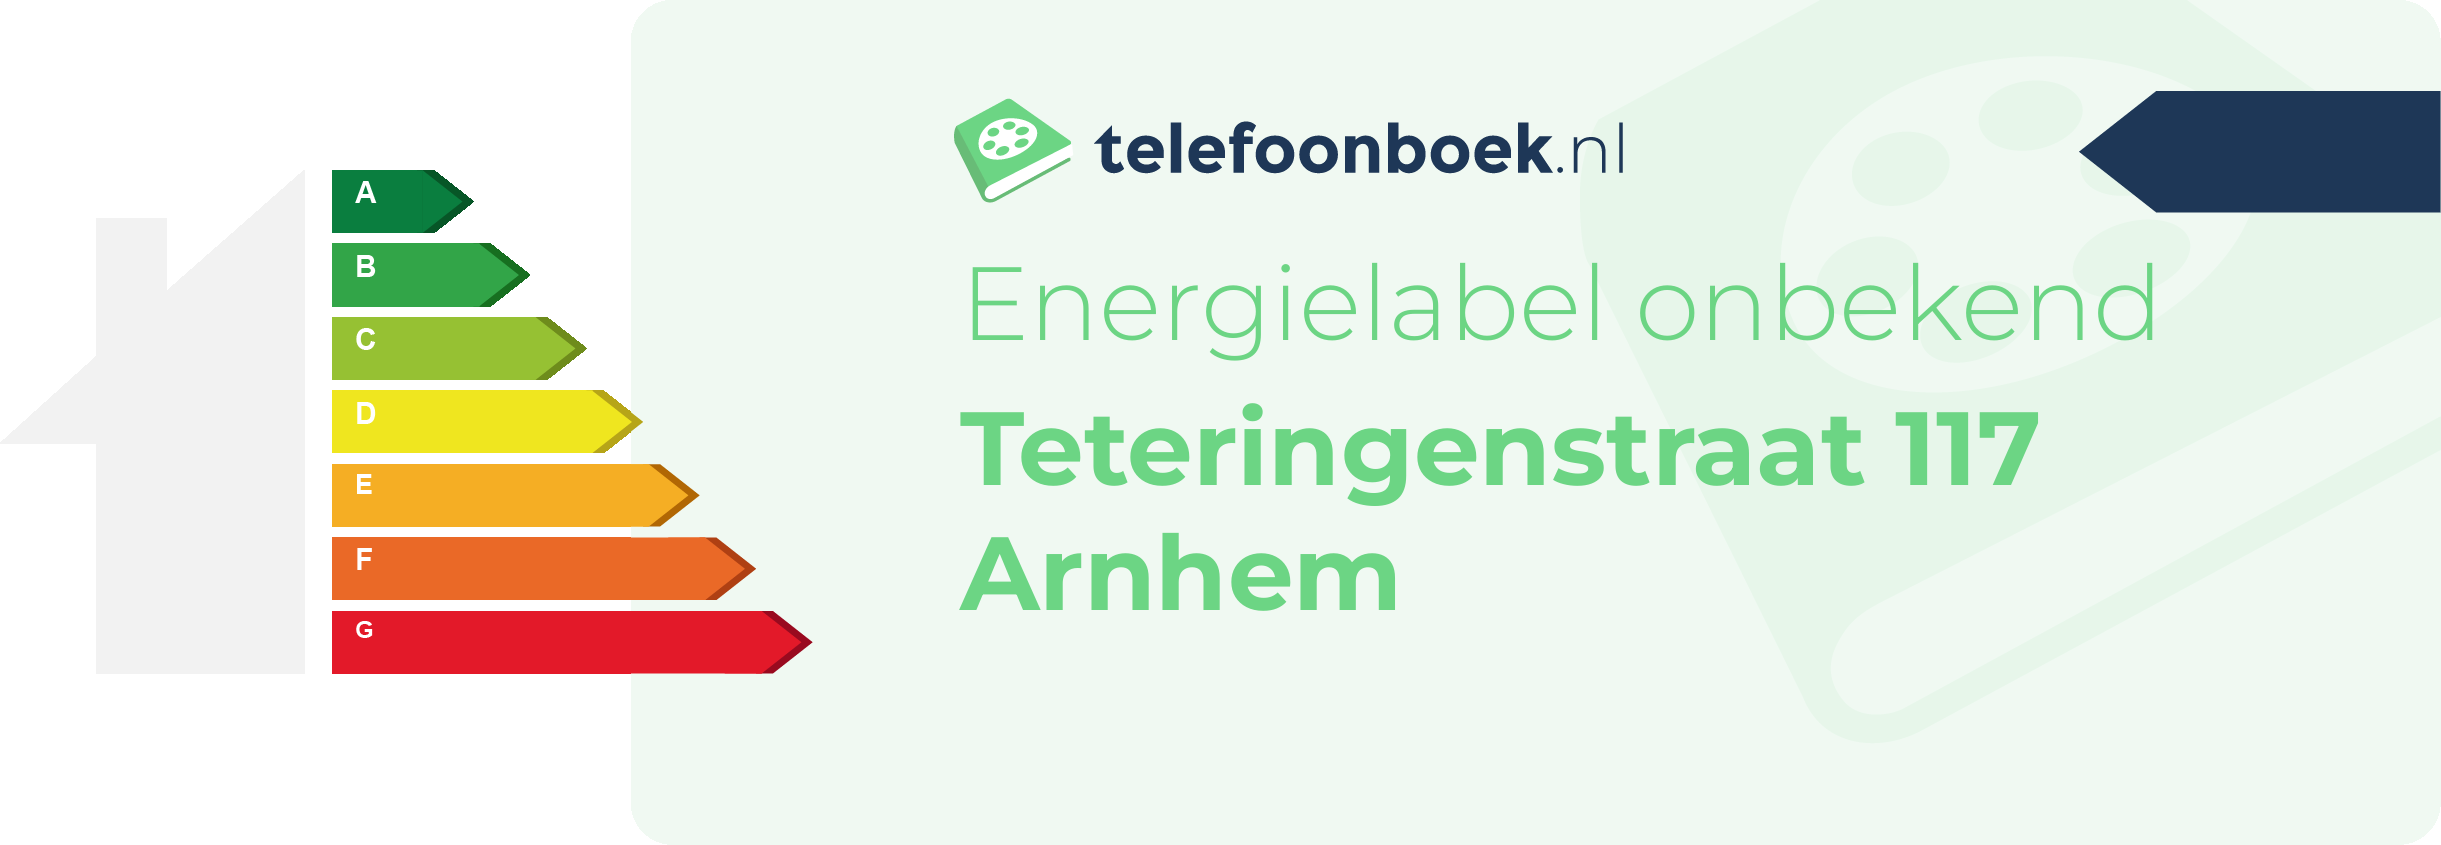 Energielabel Teteringenstraat 117 Arnhem